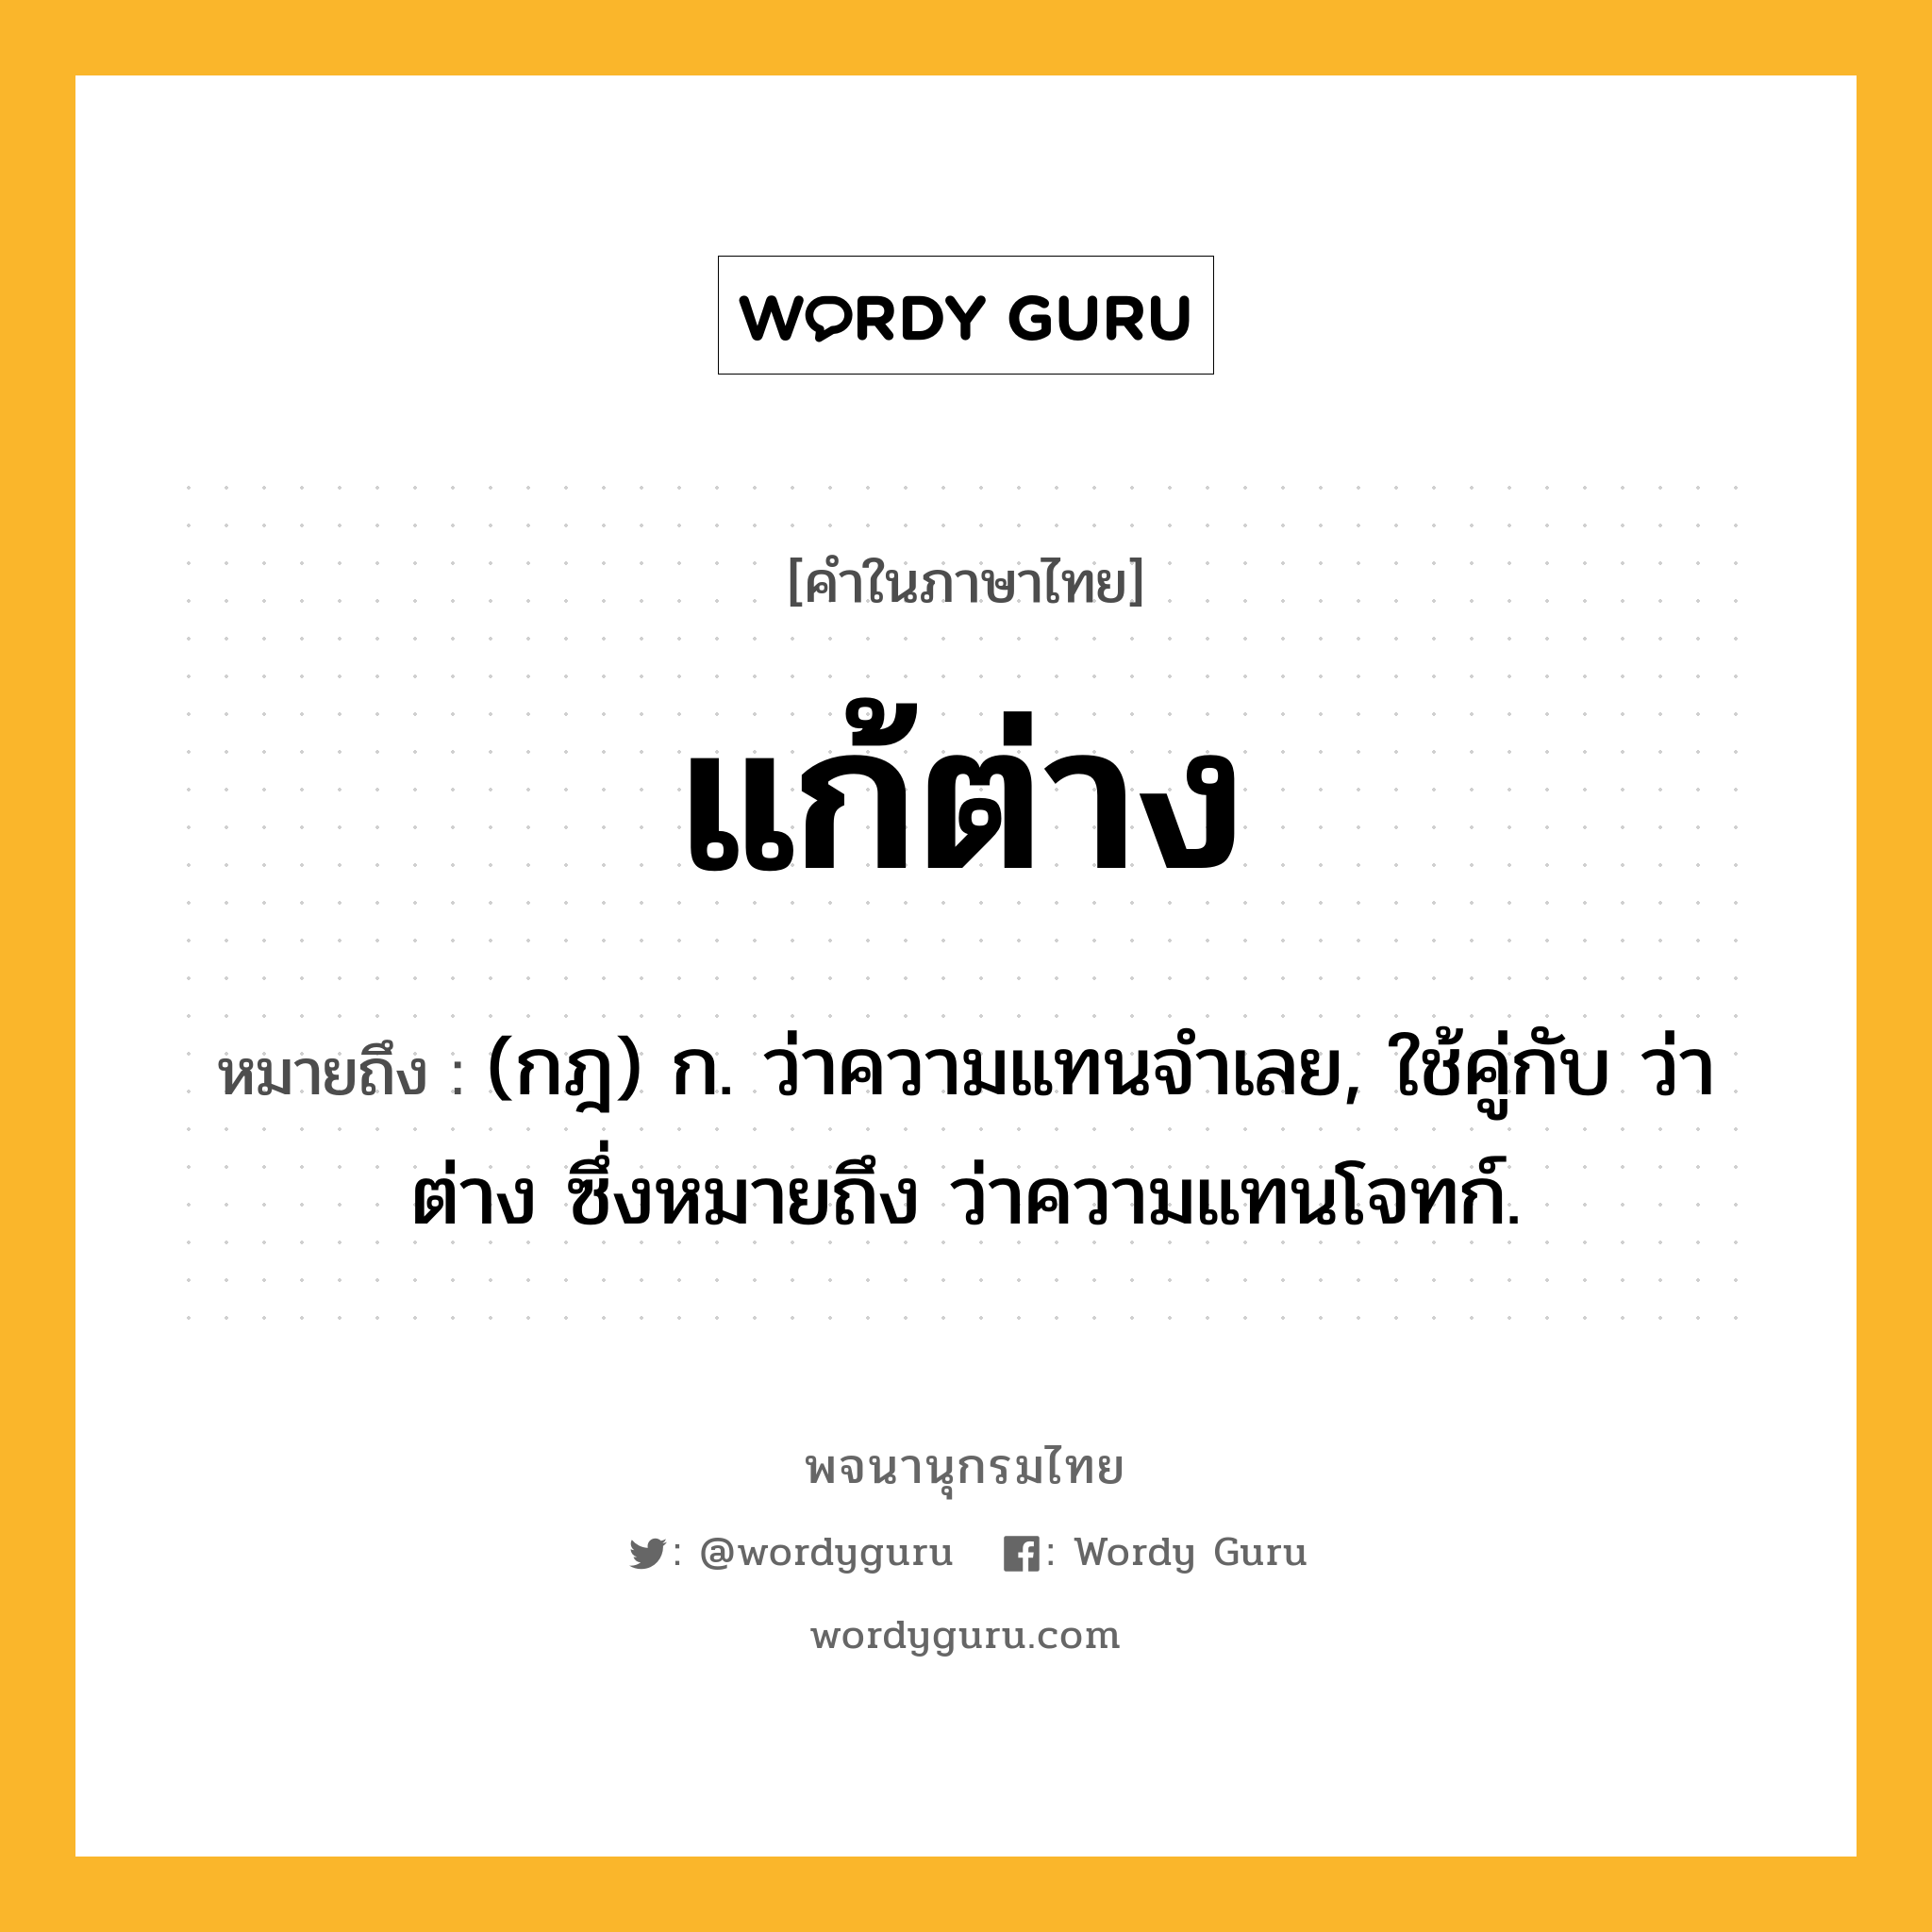 แก้ต่าง ความหมาย หมายถึงอะไร?, คำในภาษาไทย แก้ต่าง หมายถึง (กฎ) ก. ว่าความแทนจําเลย, ใช้คู่กับ ว่าต่าง ซึ่งหมายถึง ว่าความแทนโจทก์.